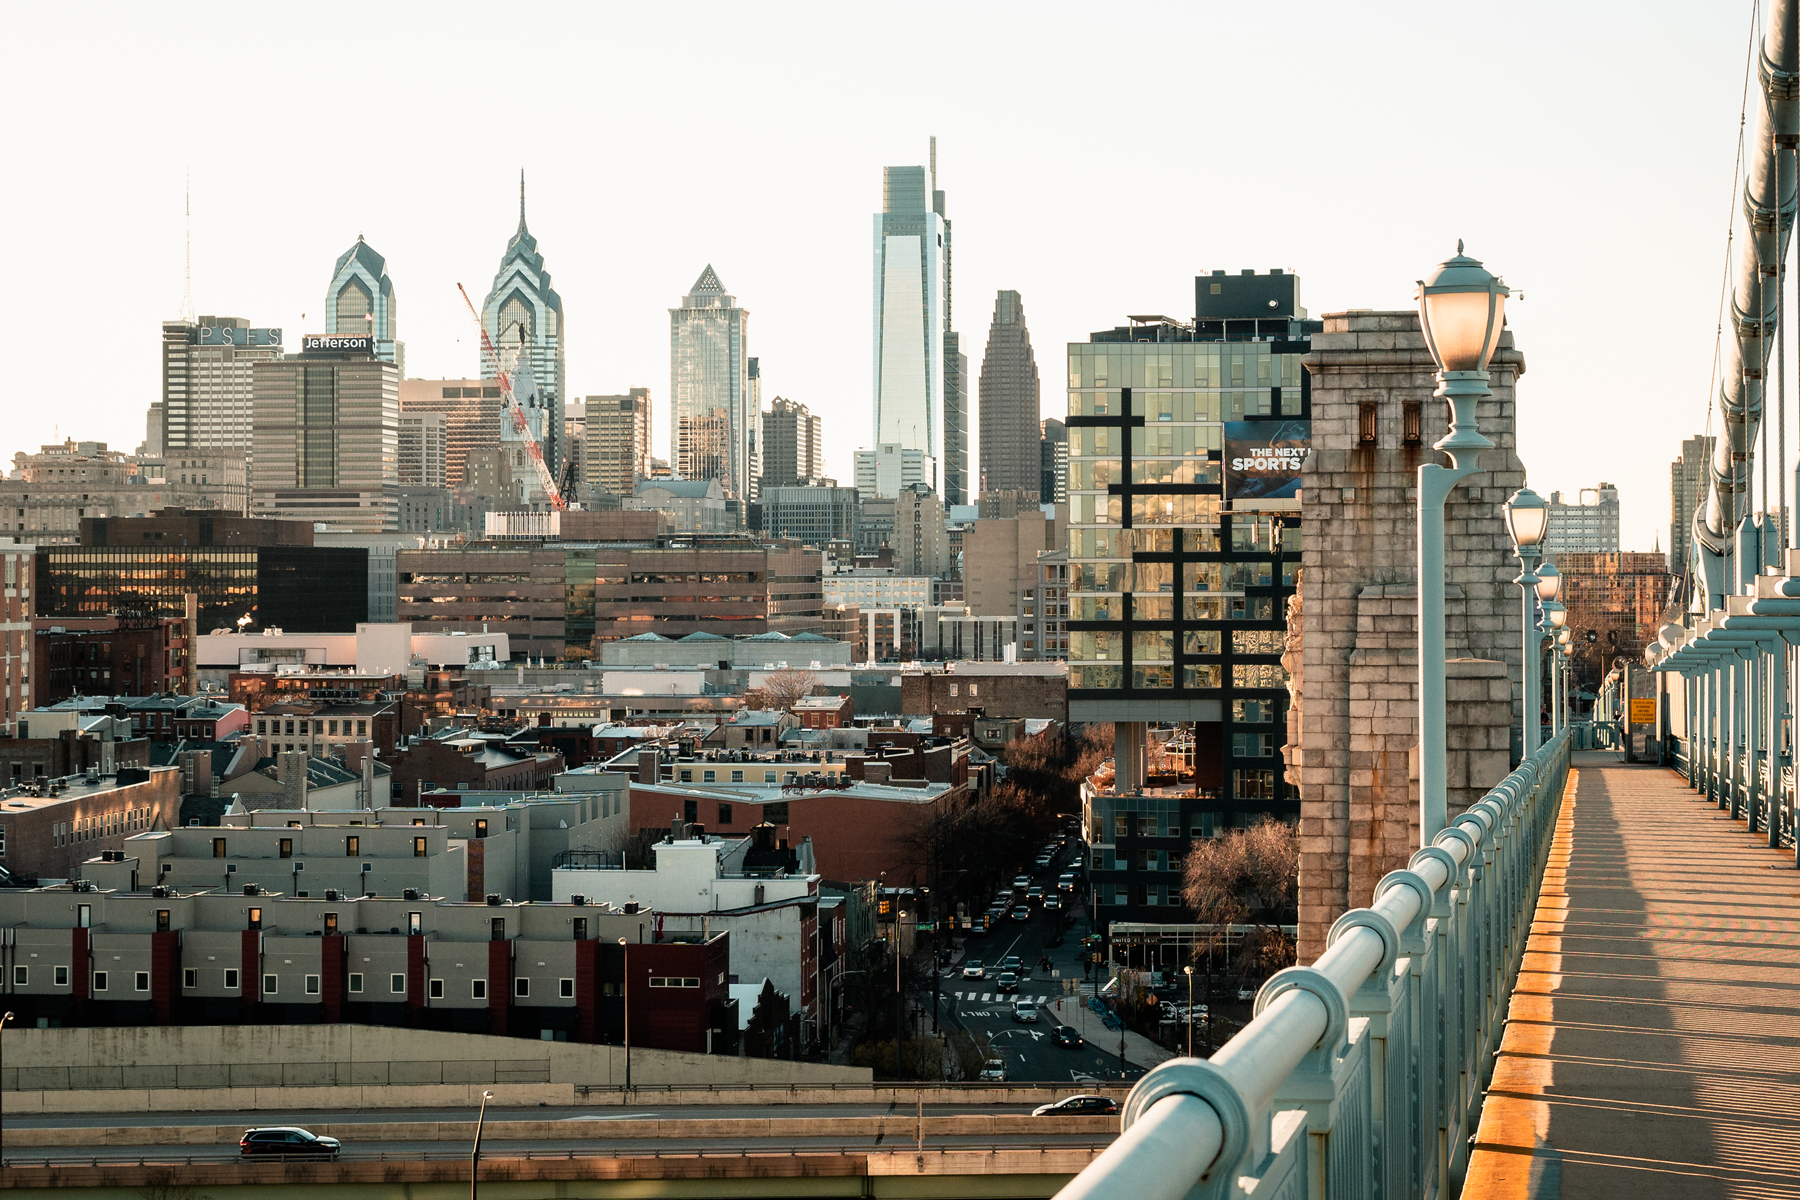 most hateful cities - Philadelphia